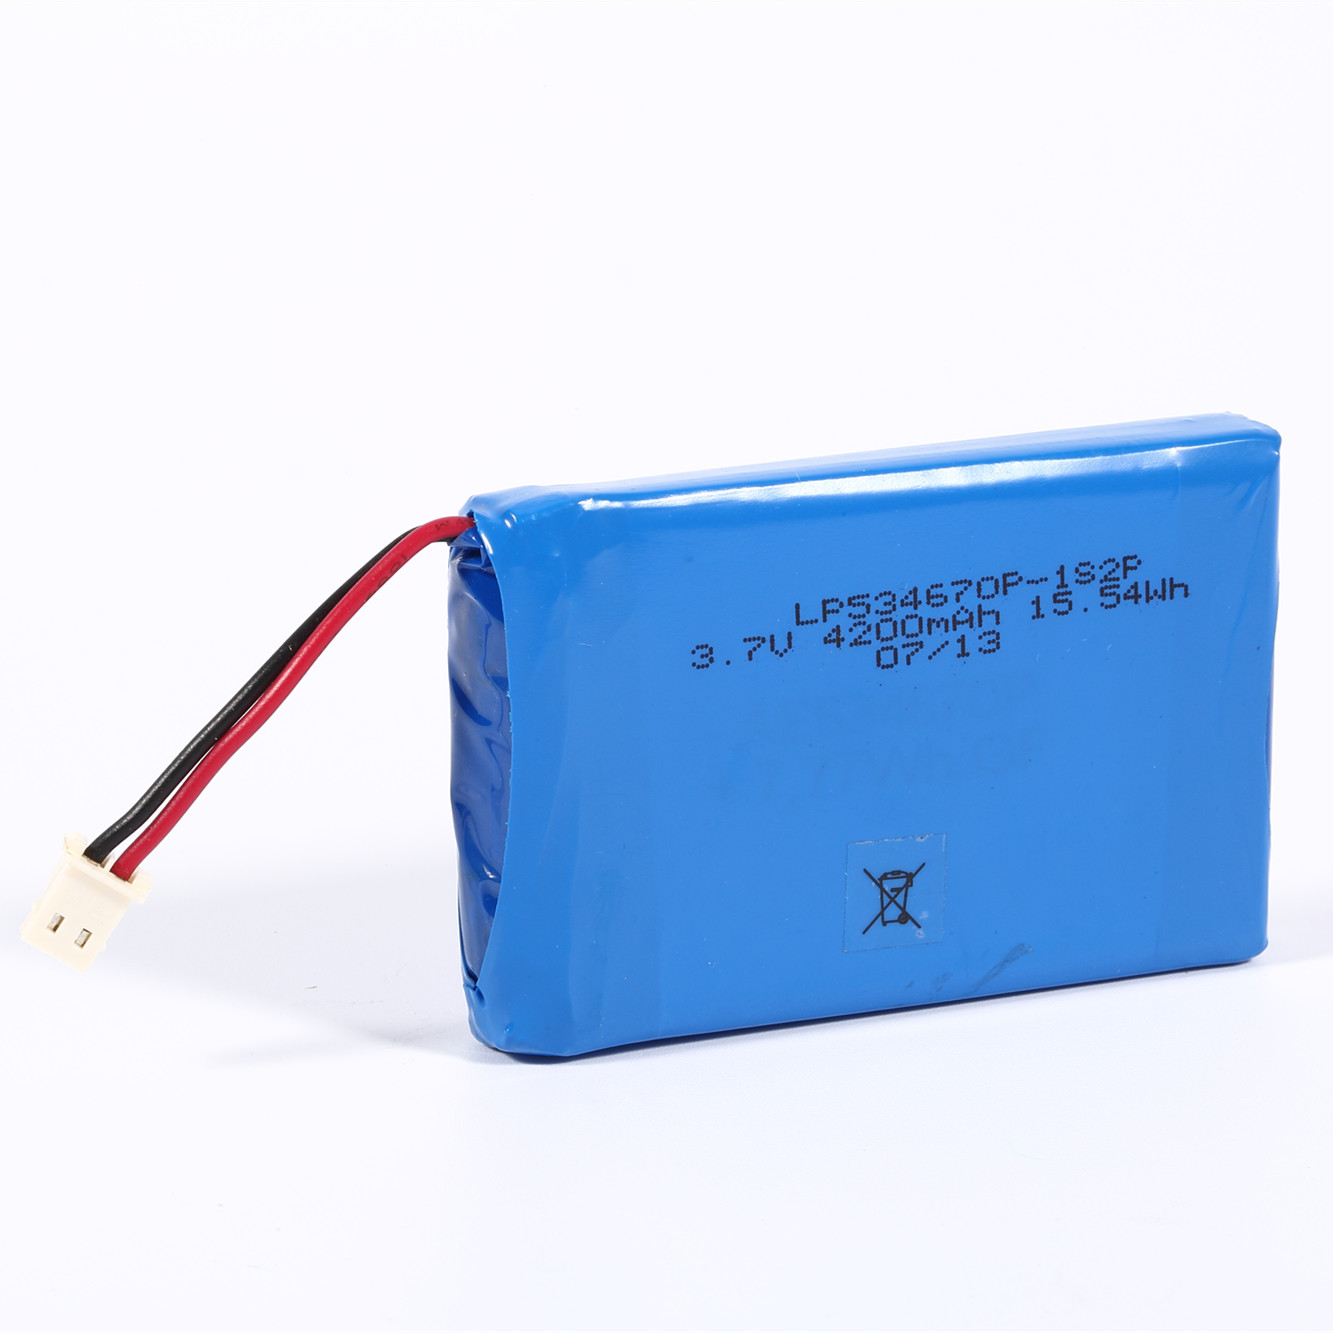 célula de bateria de polímero de lítio drone 3080 mah de alta capacidade